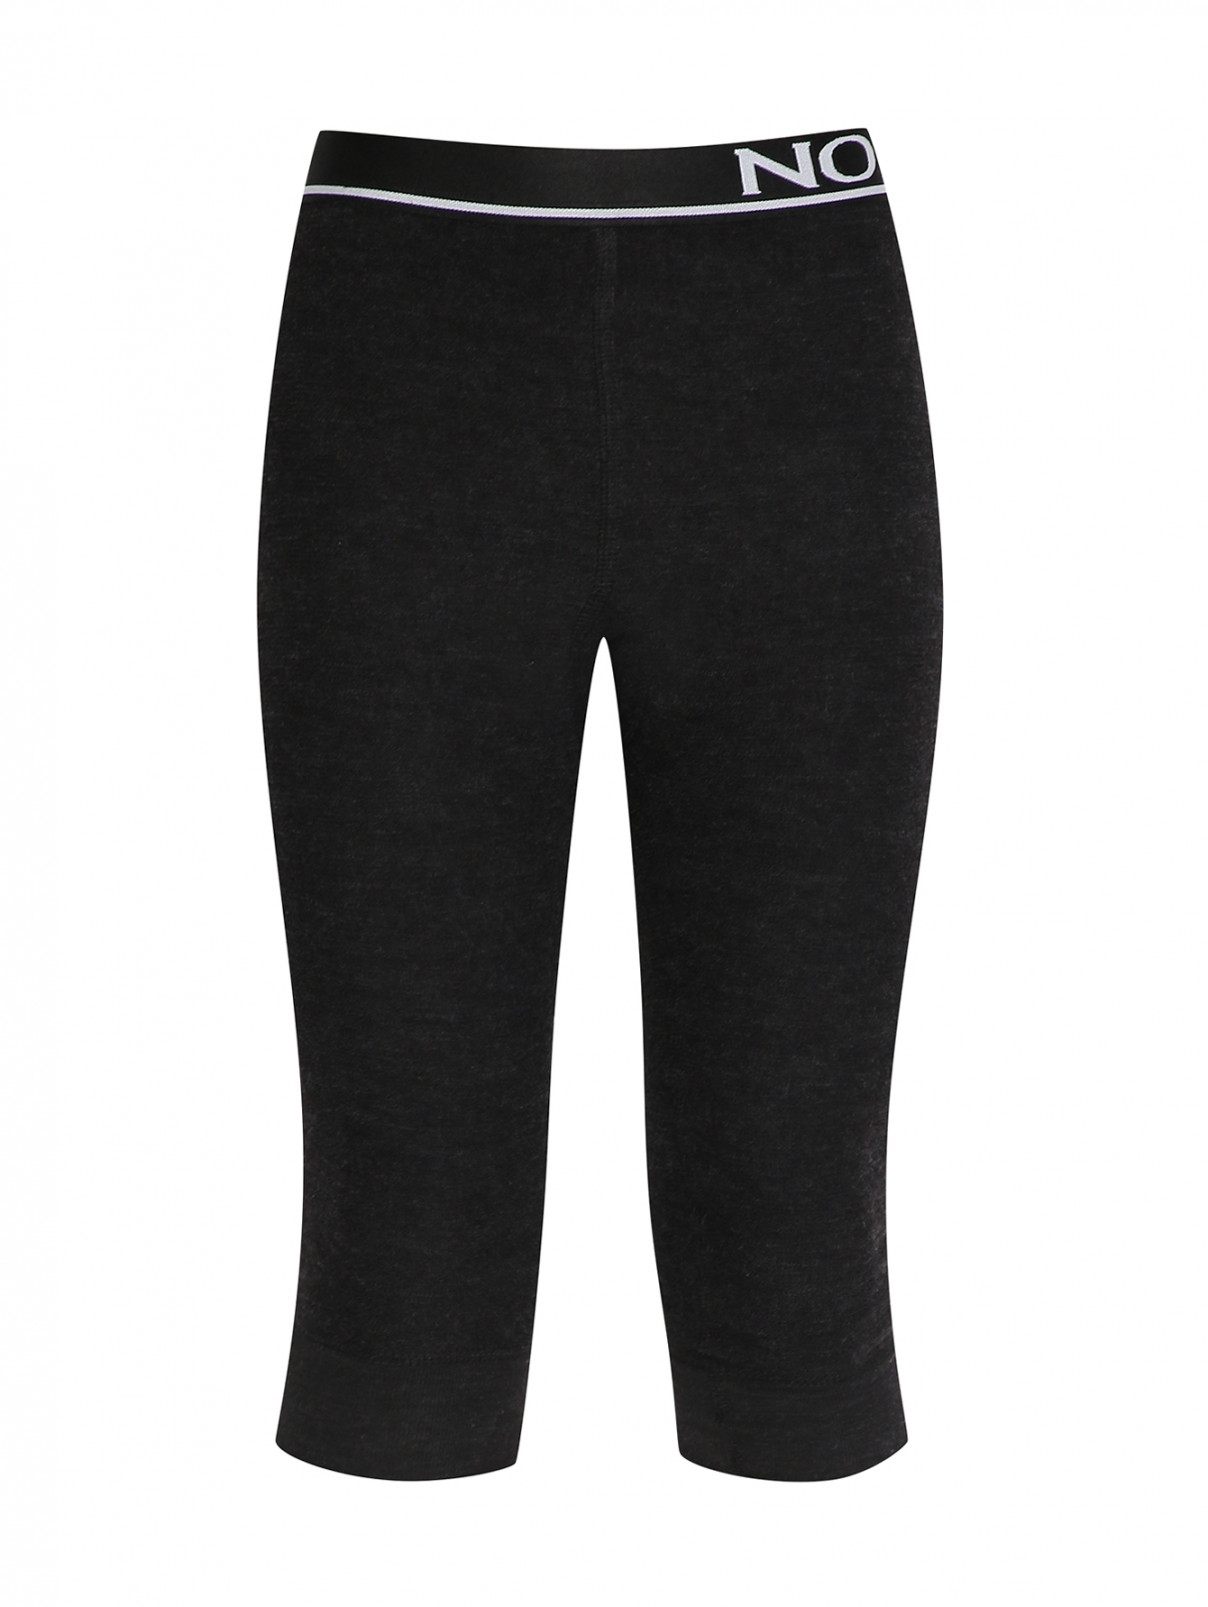 Пижамные штаны из шерсти (термобелье) Norveg  –  Общий вид  – Цвет:  Серый